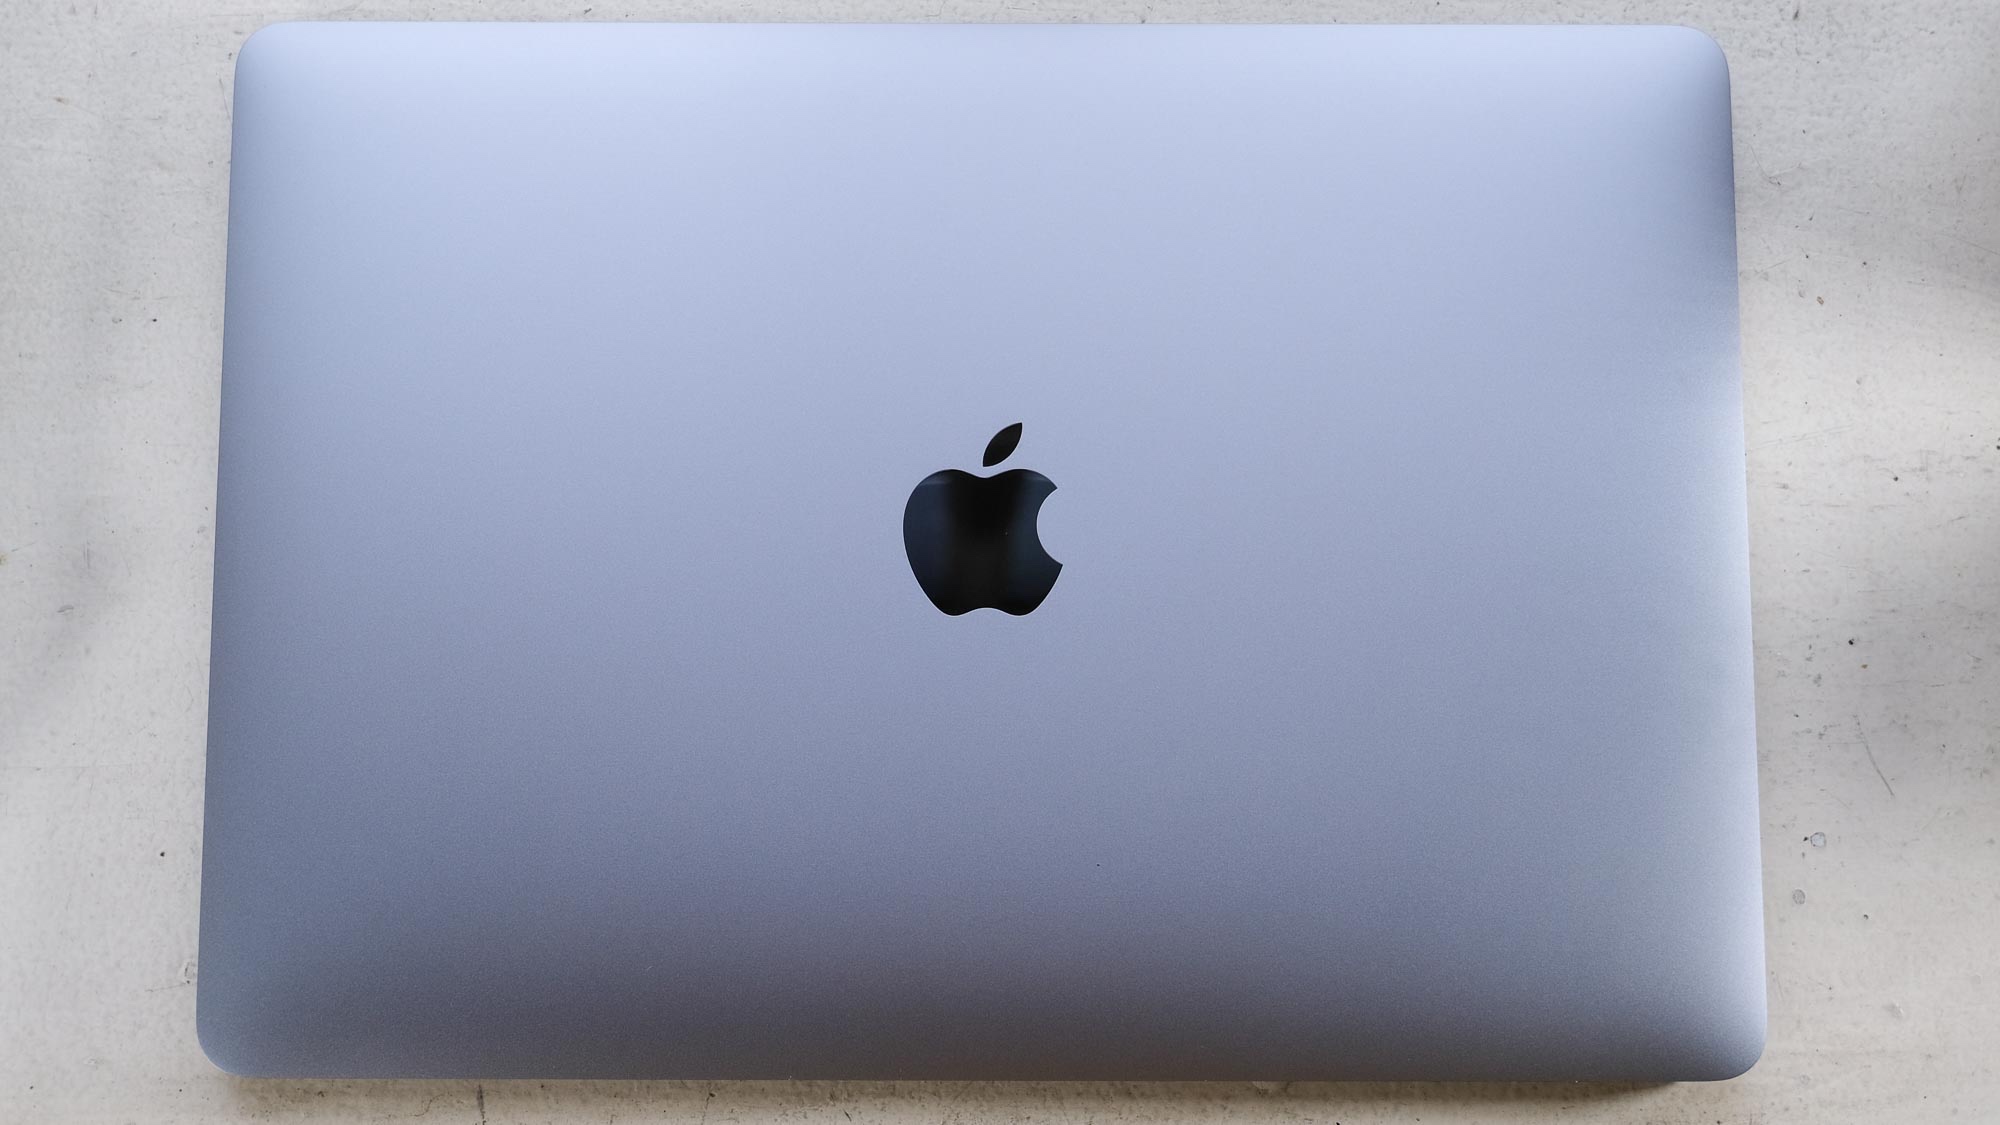 Melhores MacBooks - MacBook Air com M1 - Design